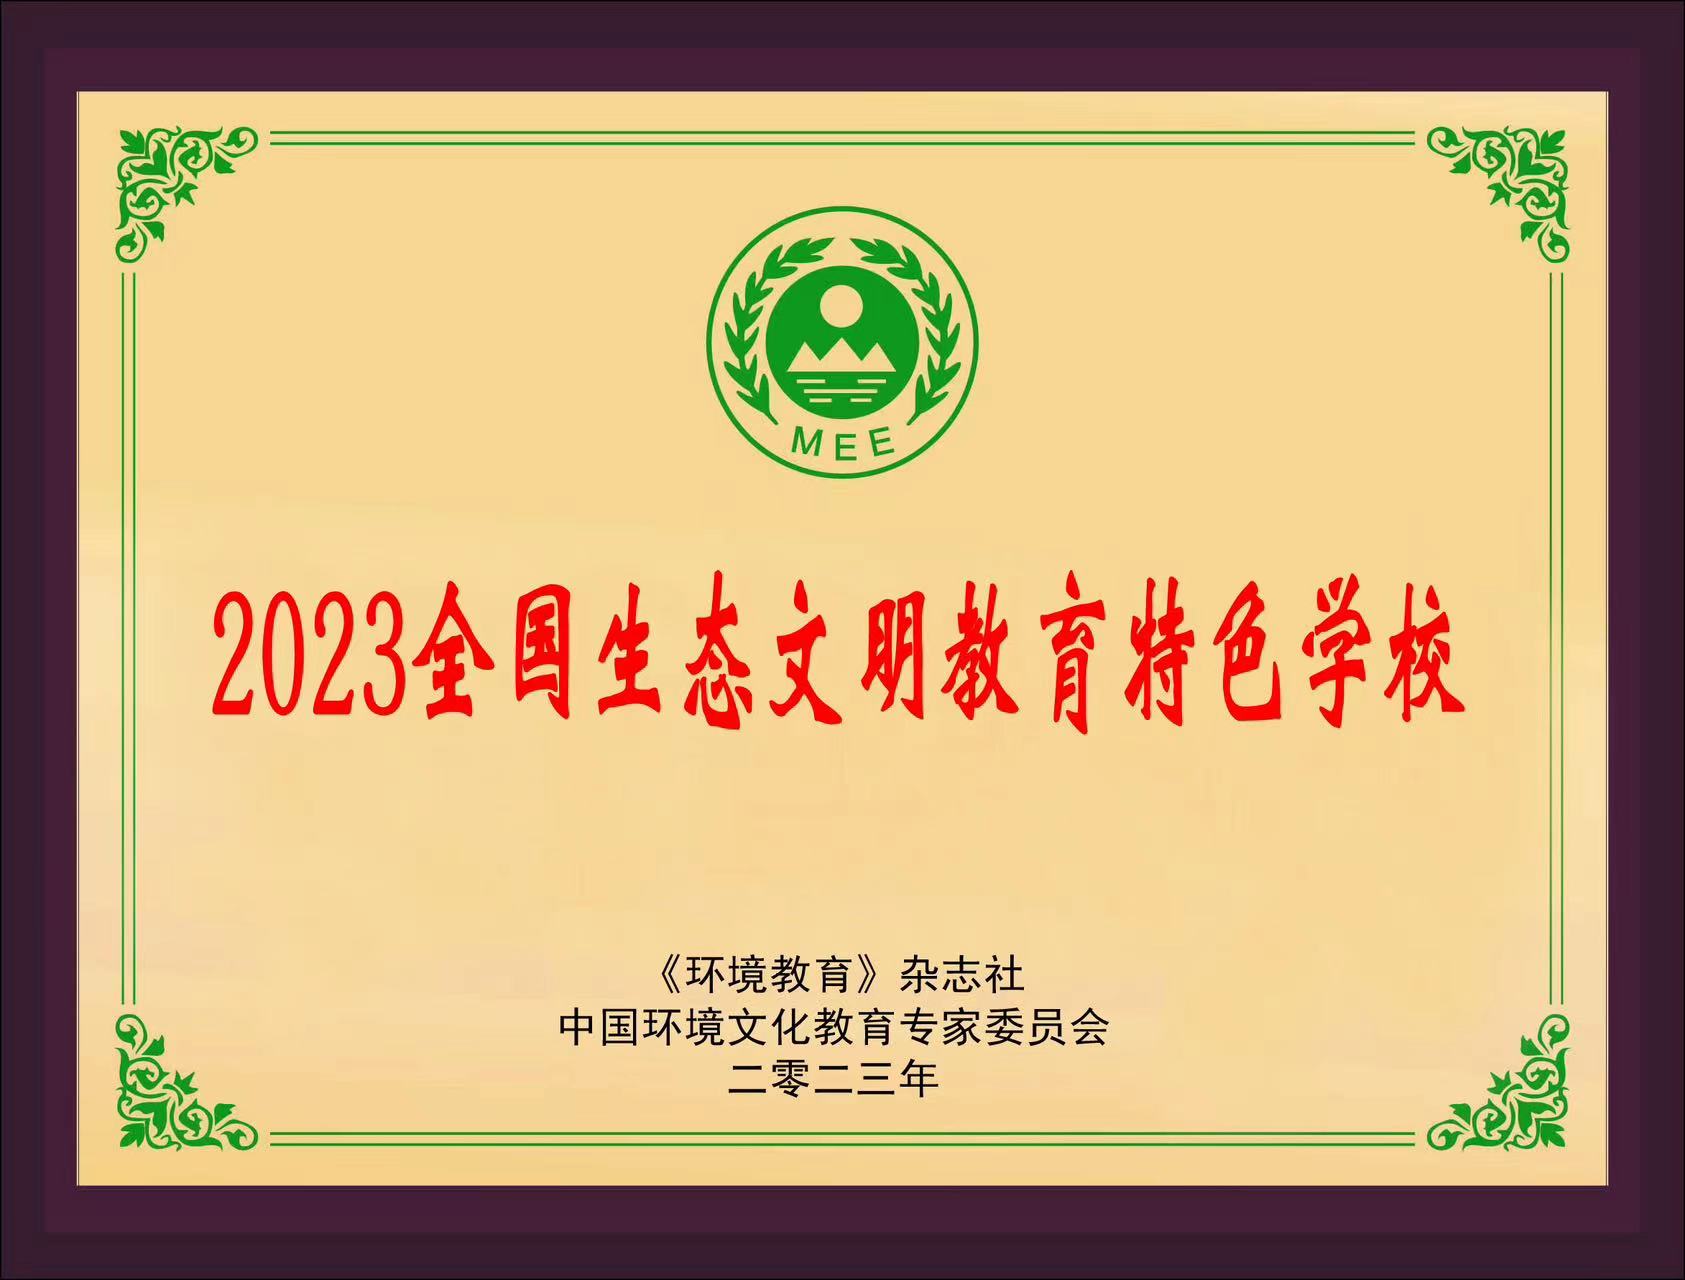 2023年全国生态文明教育特色学校.jpg